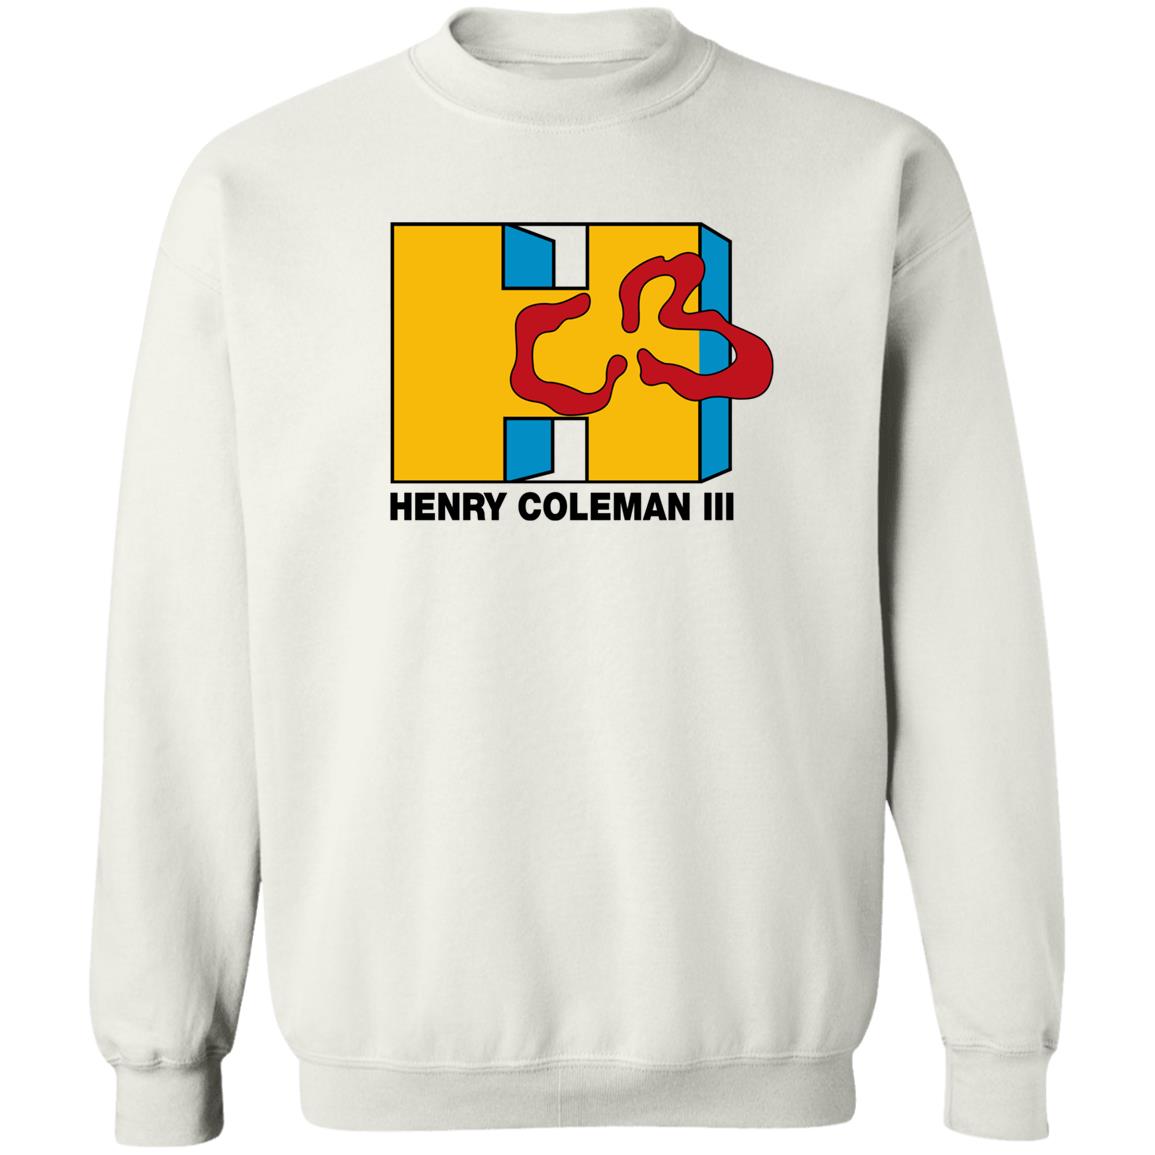 Henry Coleman Iii Shirt 2